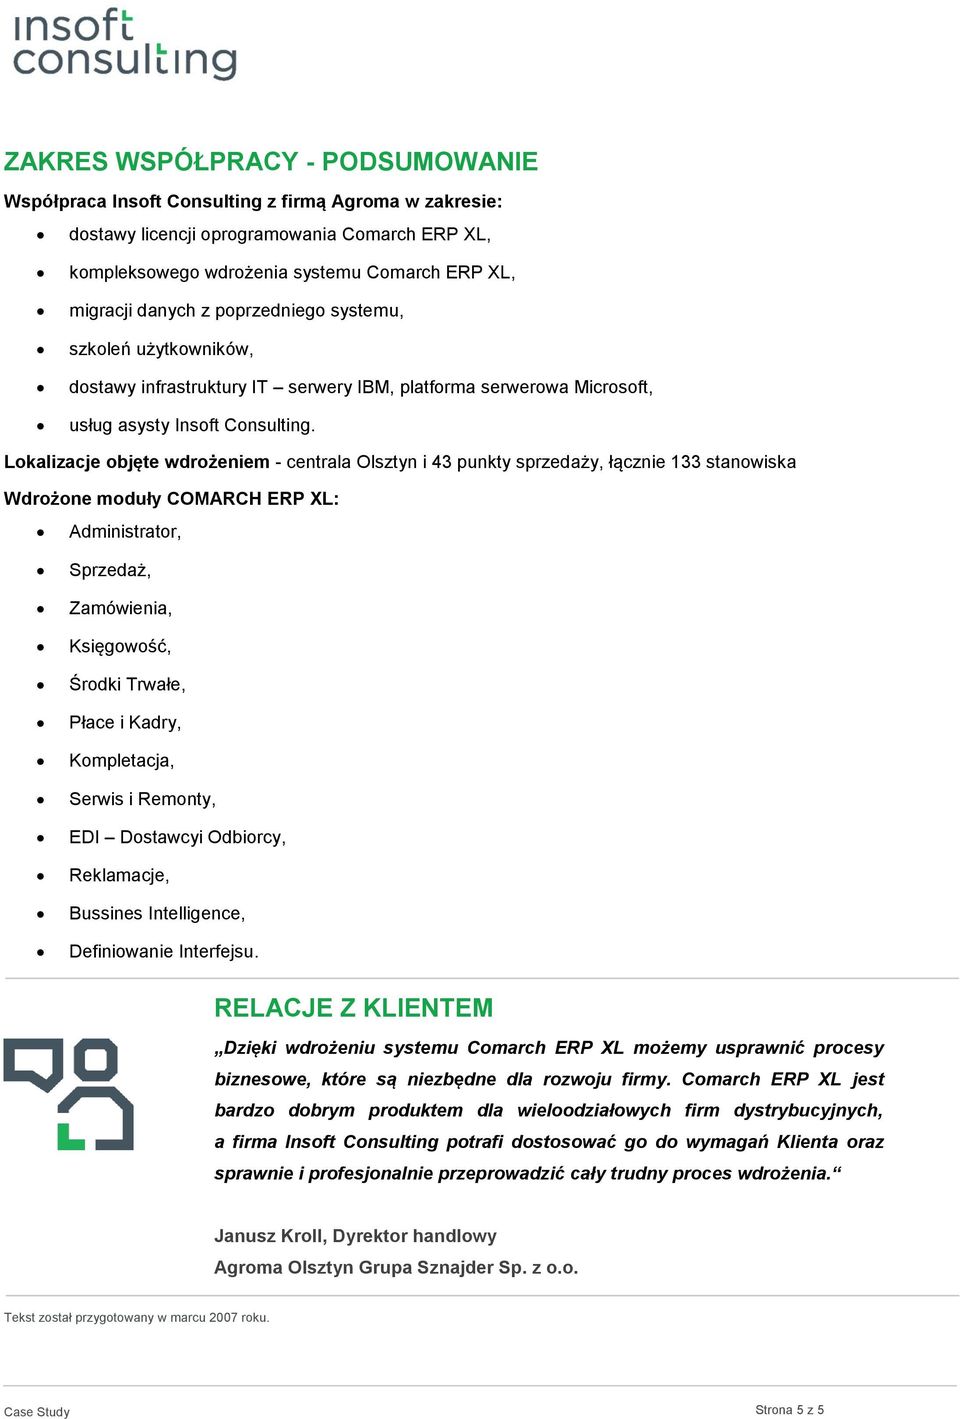 Lokalizacje objęte wdrożeniem - centrala Olsztyn i 43 punkty sprzedaży, łącznie 133 stanowiska Wdrożone moduły COMARCH ERP XL: Administrator, Sprzedaż, Zamówienia, Księgowość, Środki Trwałe, Płace i